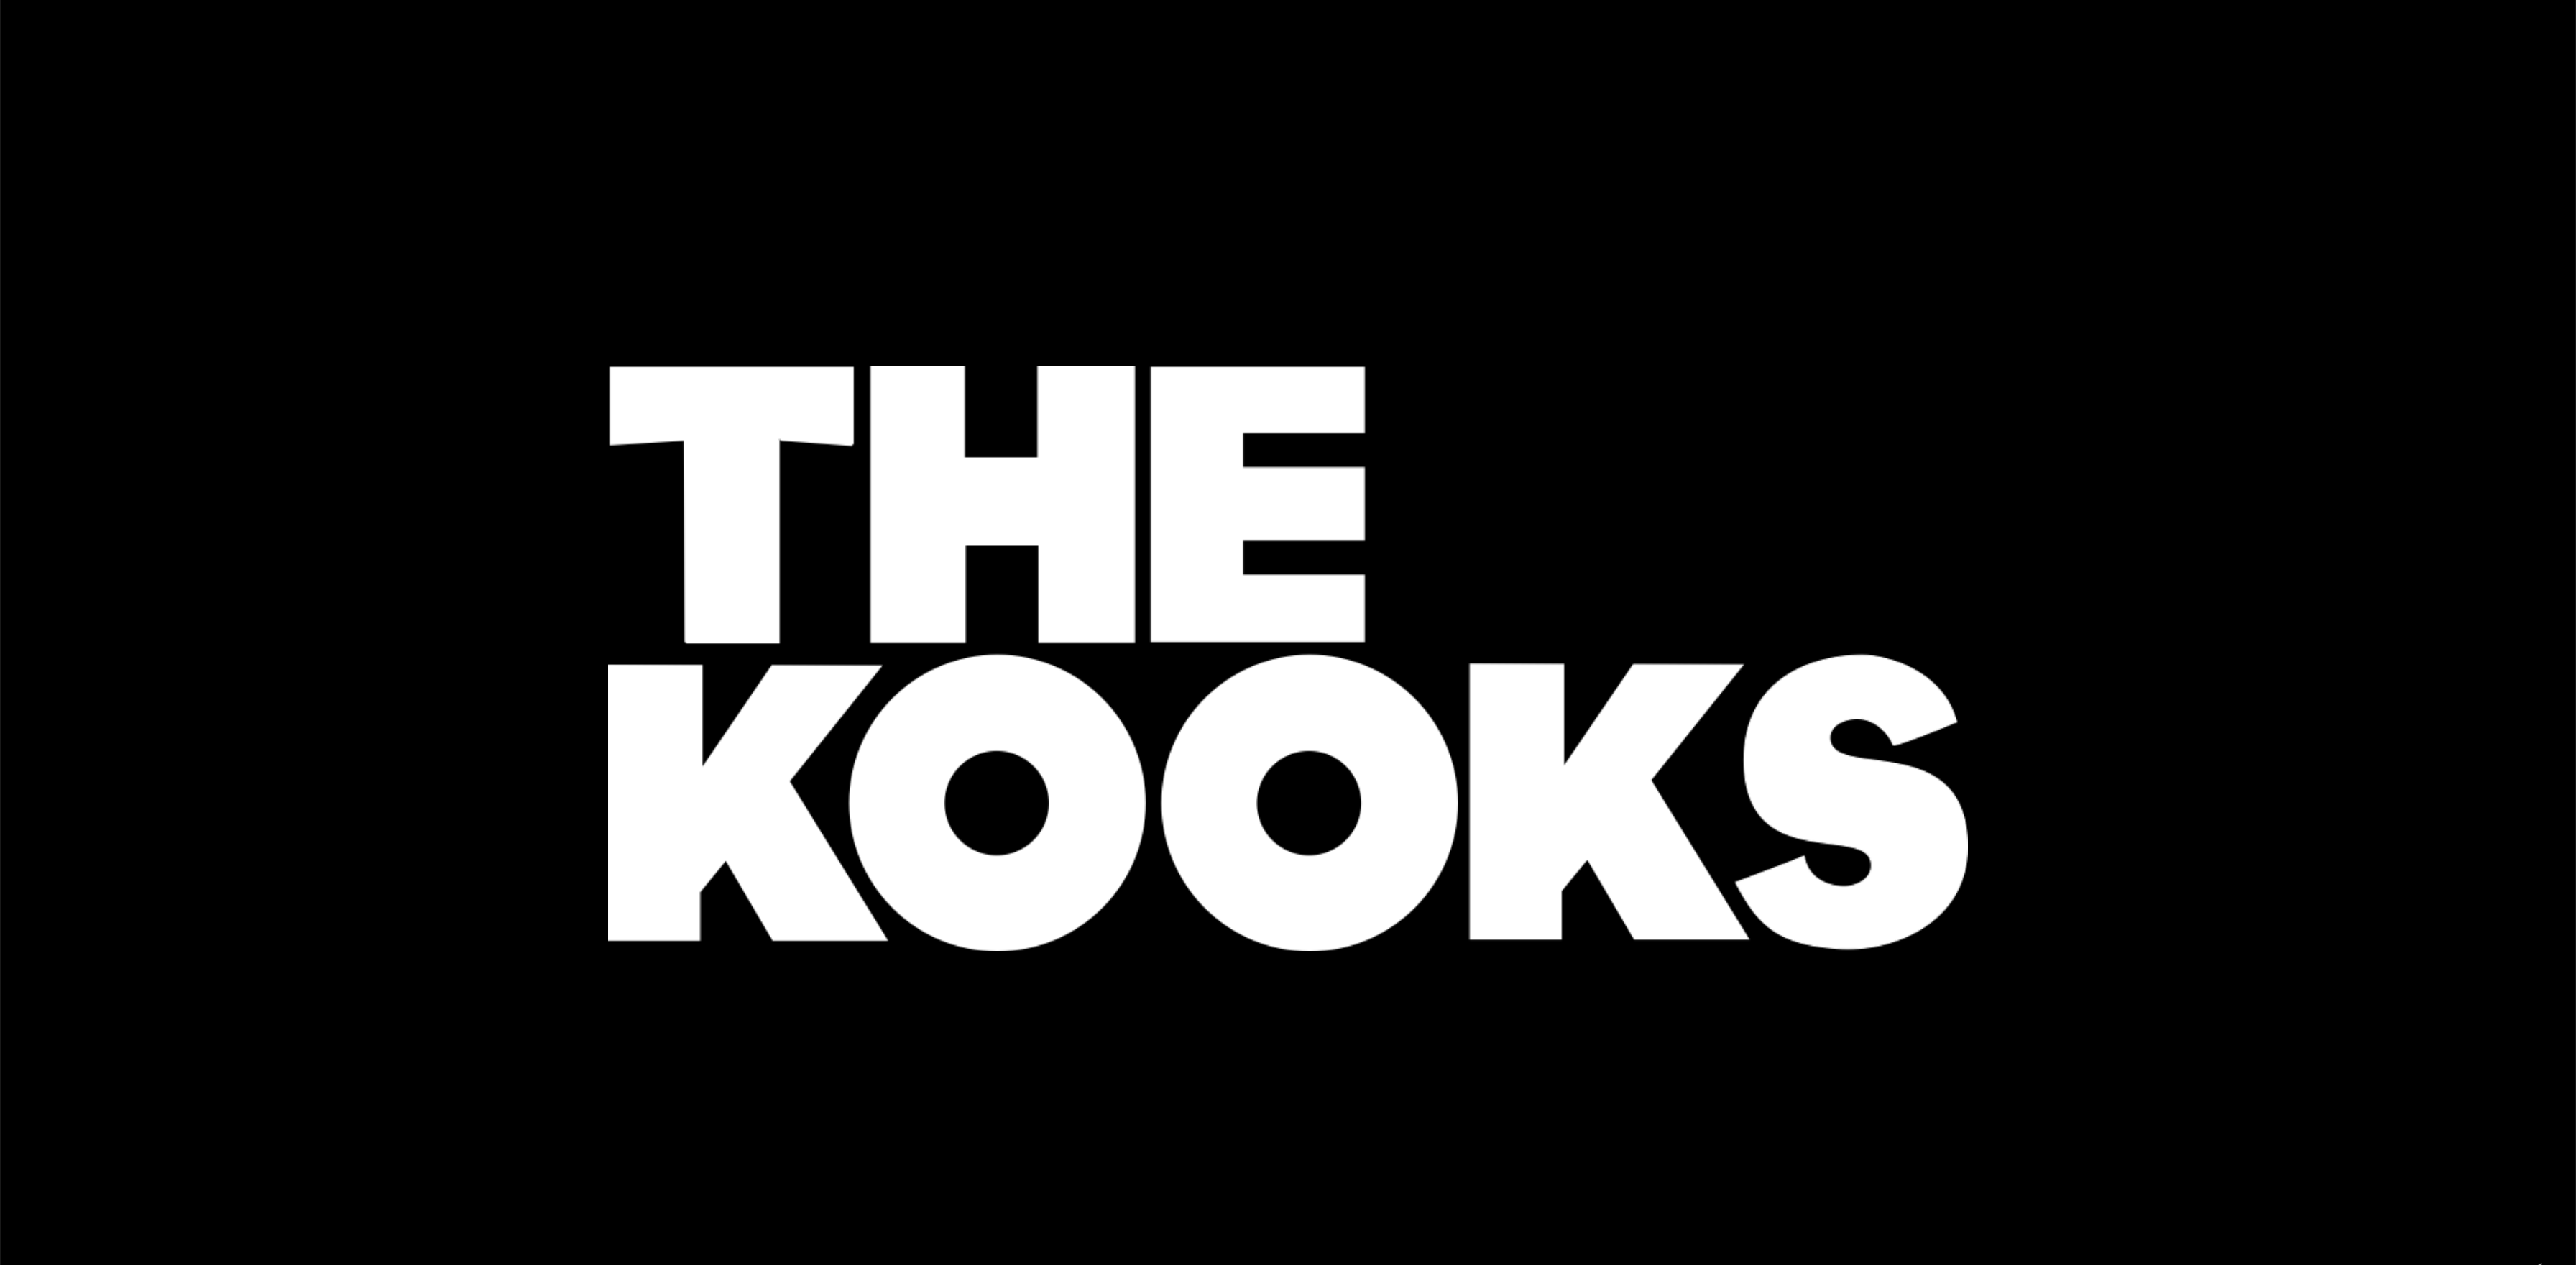 (c) Thekooks.com